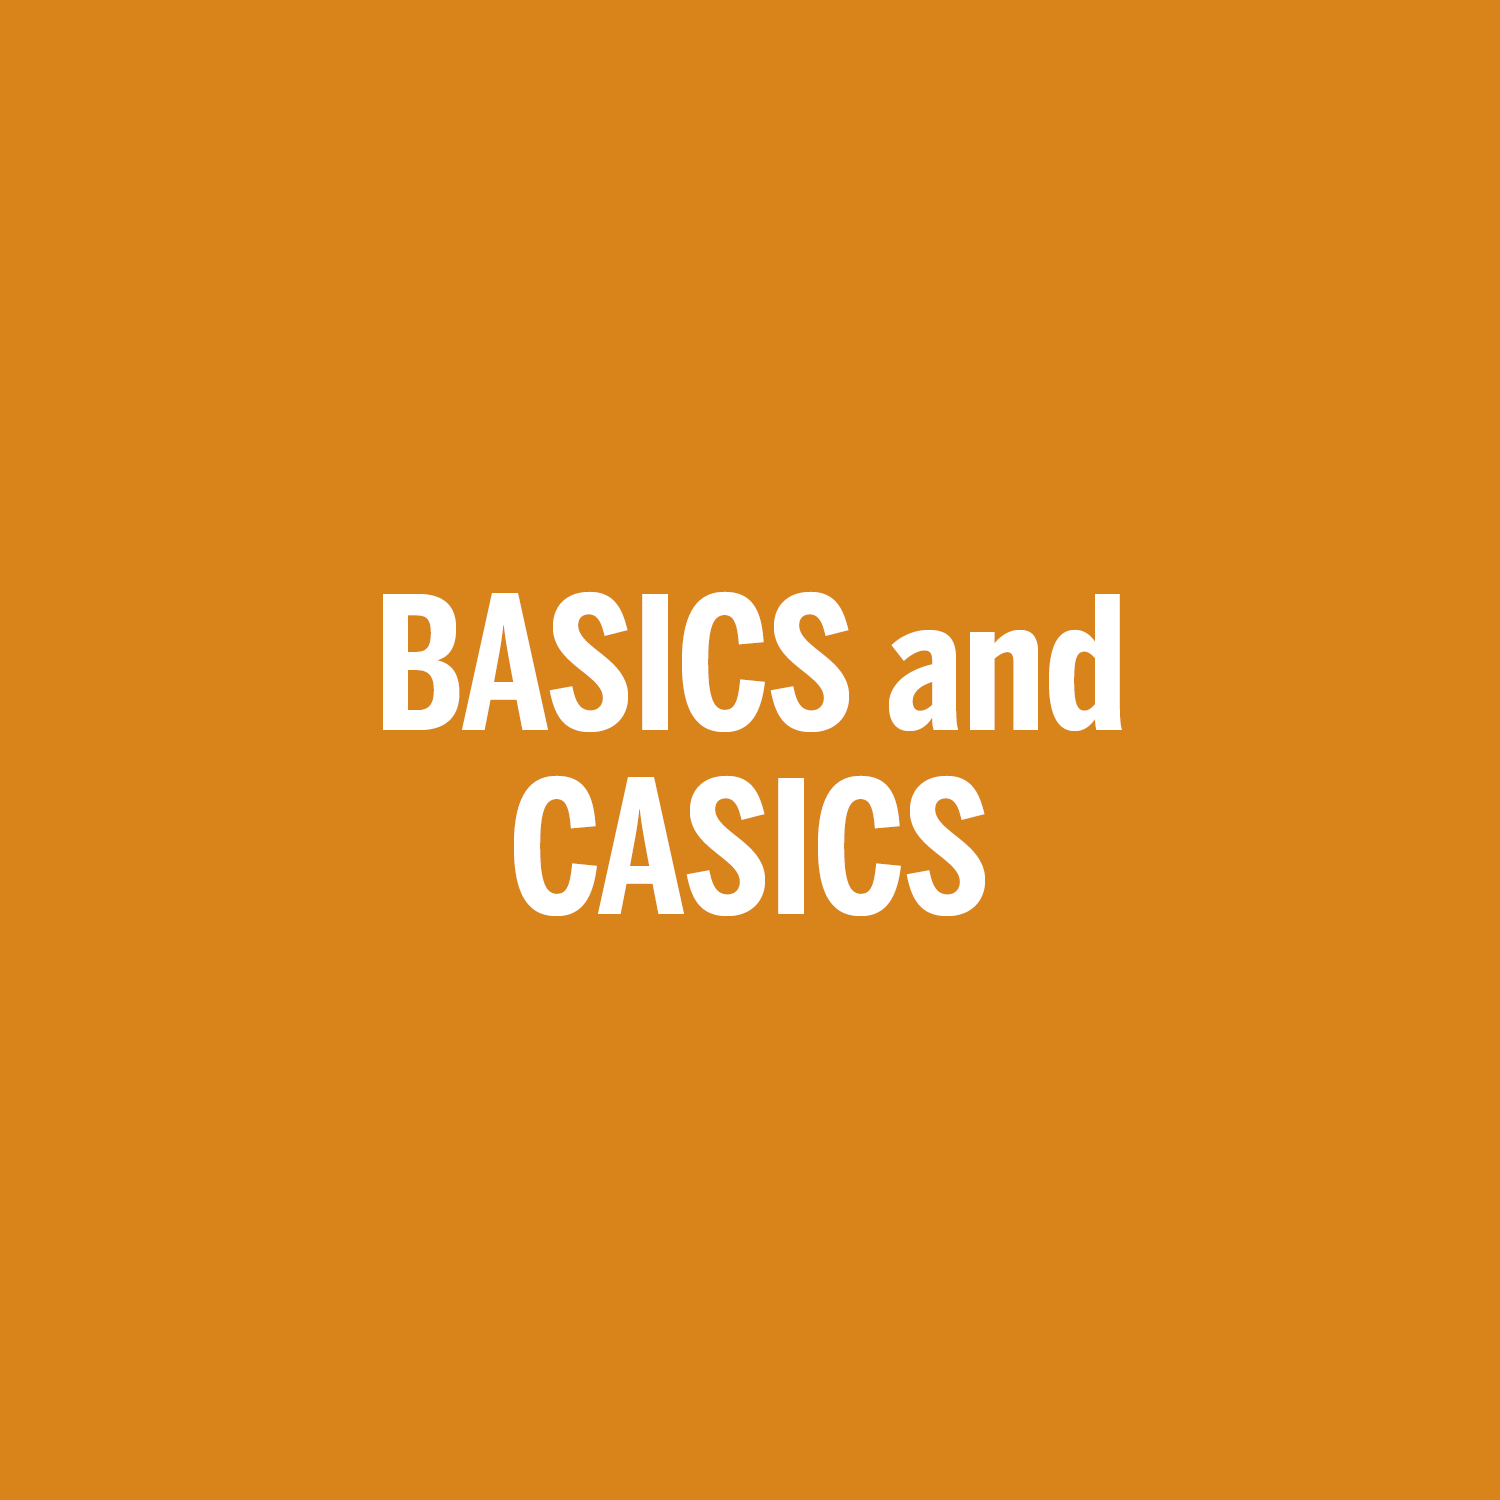 BASICS and CASICS